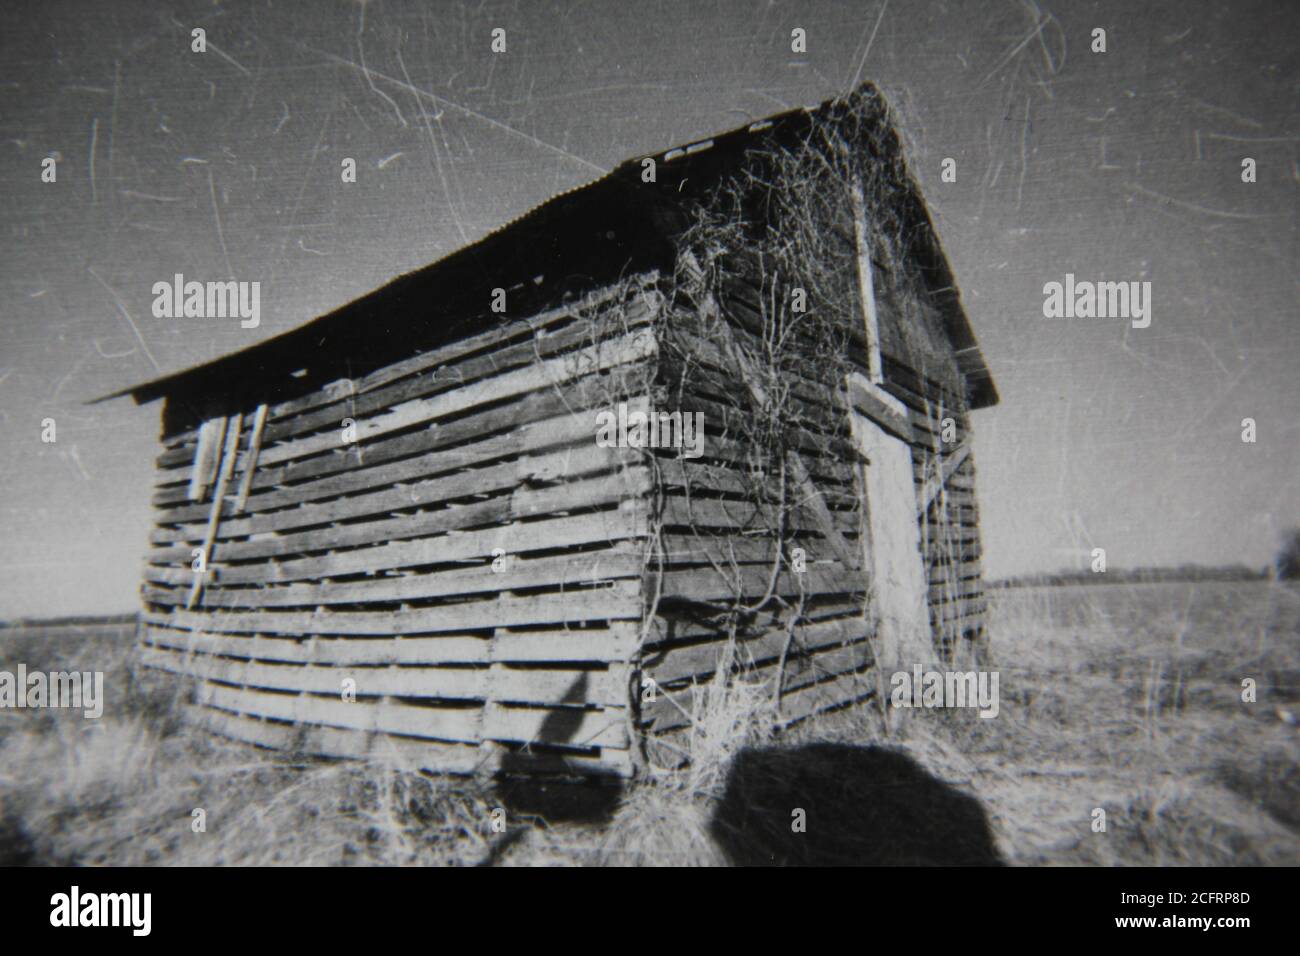 Feine 70er Jahre Vintage Schwarz-Weiß-Fotografie einer alten verwitterten und zerschlagene Hütte, die auf den Feldern steht. Stockfoto